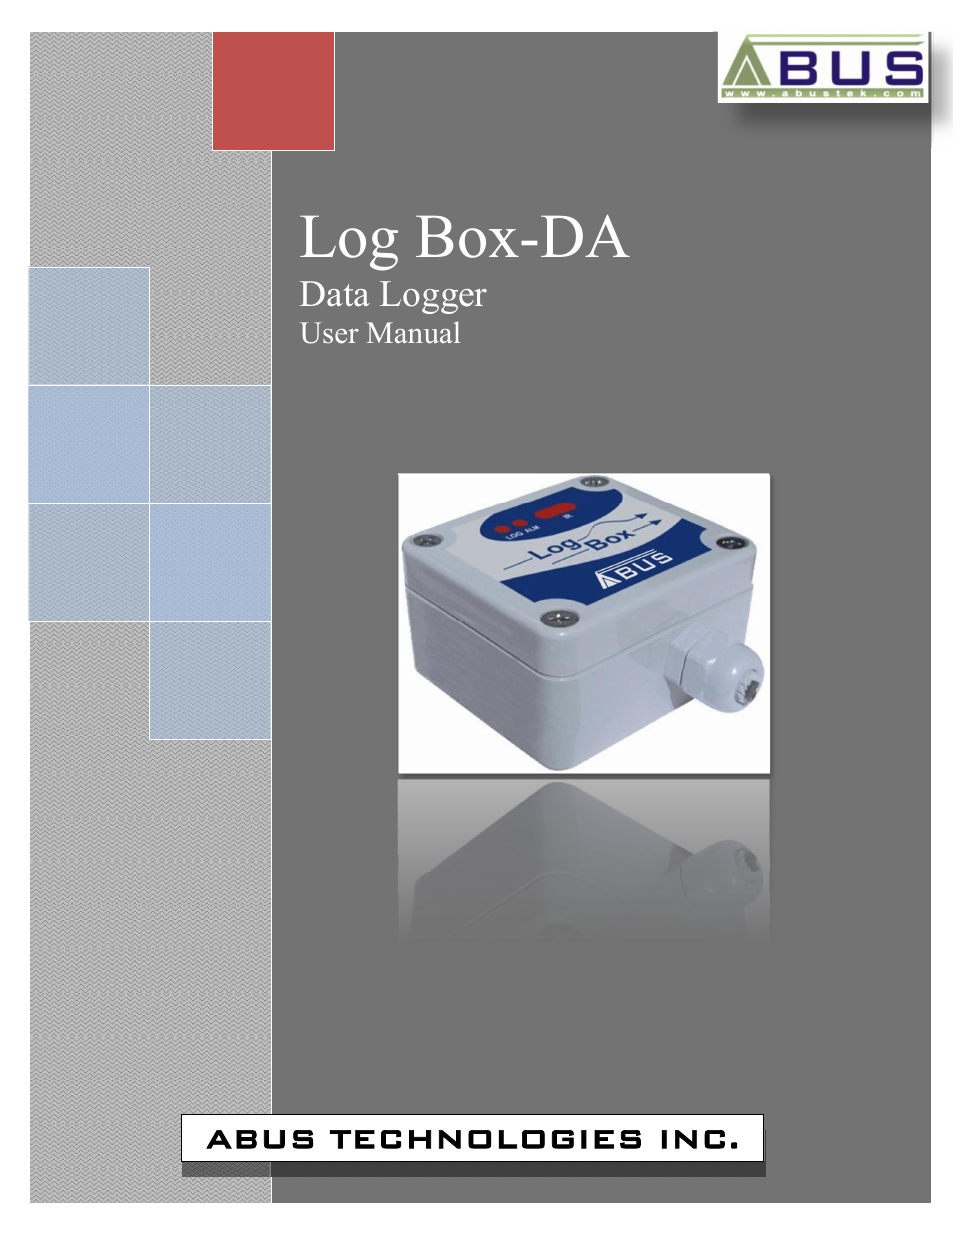 Log Box-DA Data Logger